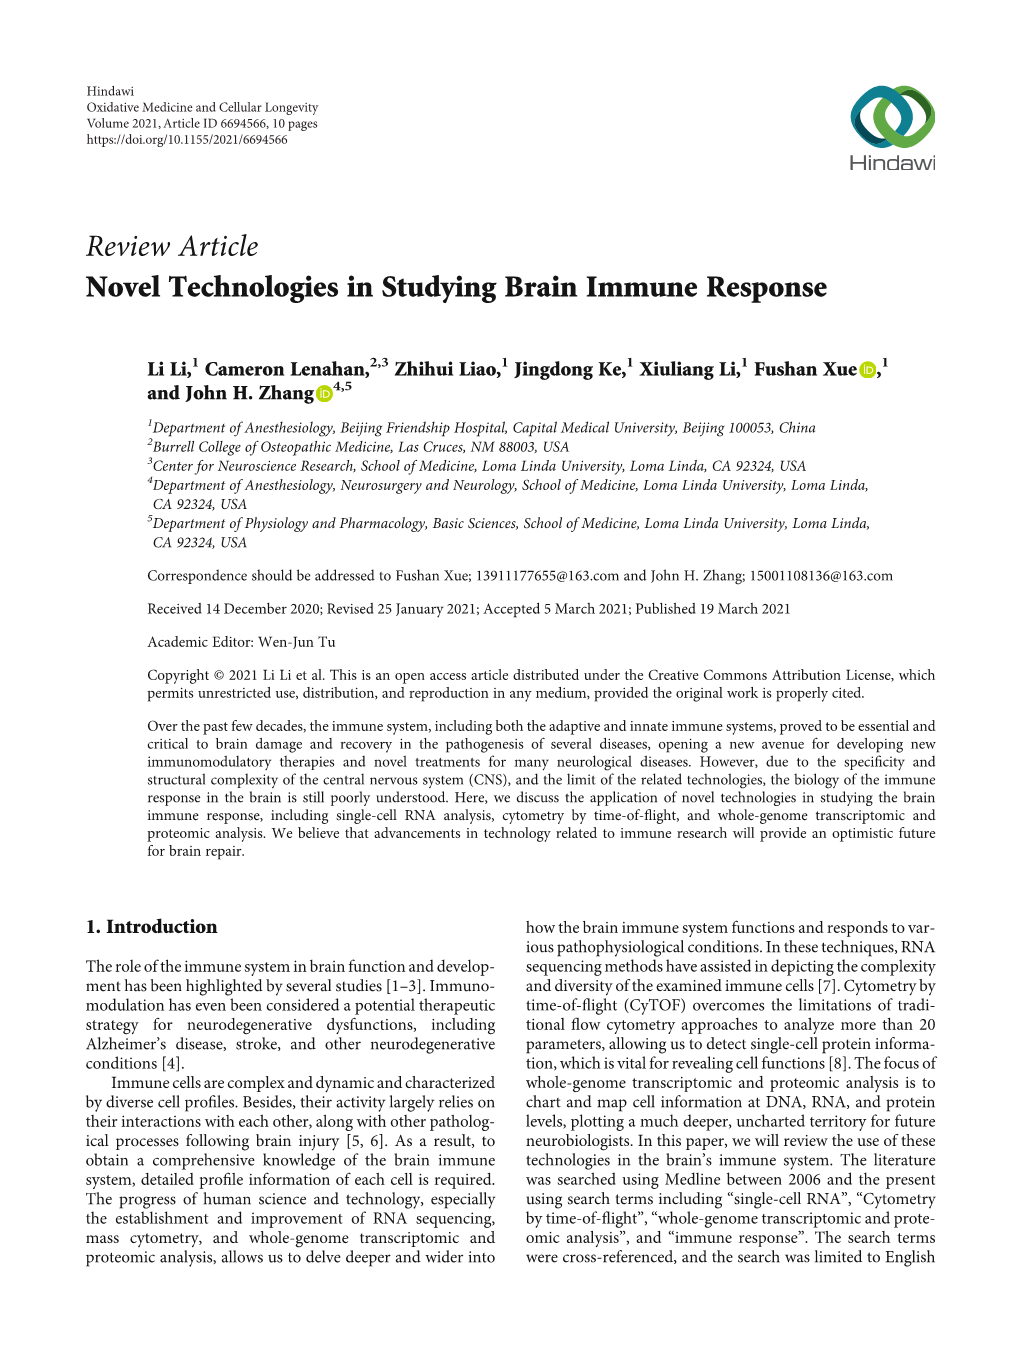 Novel Technologies in Studying Brain Immune Response